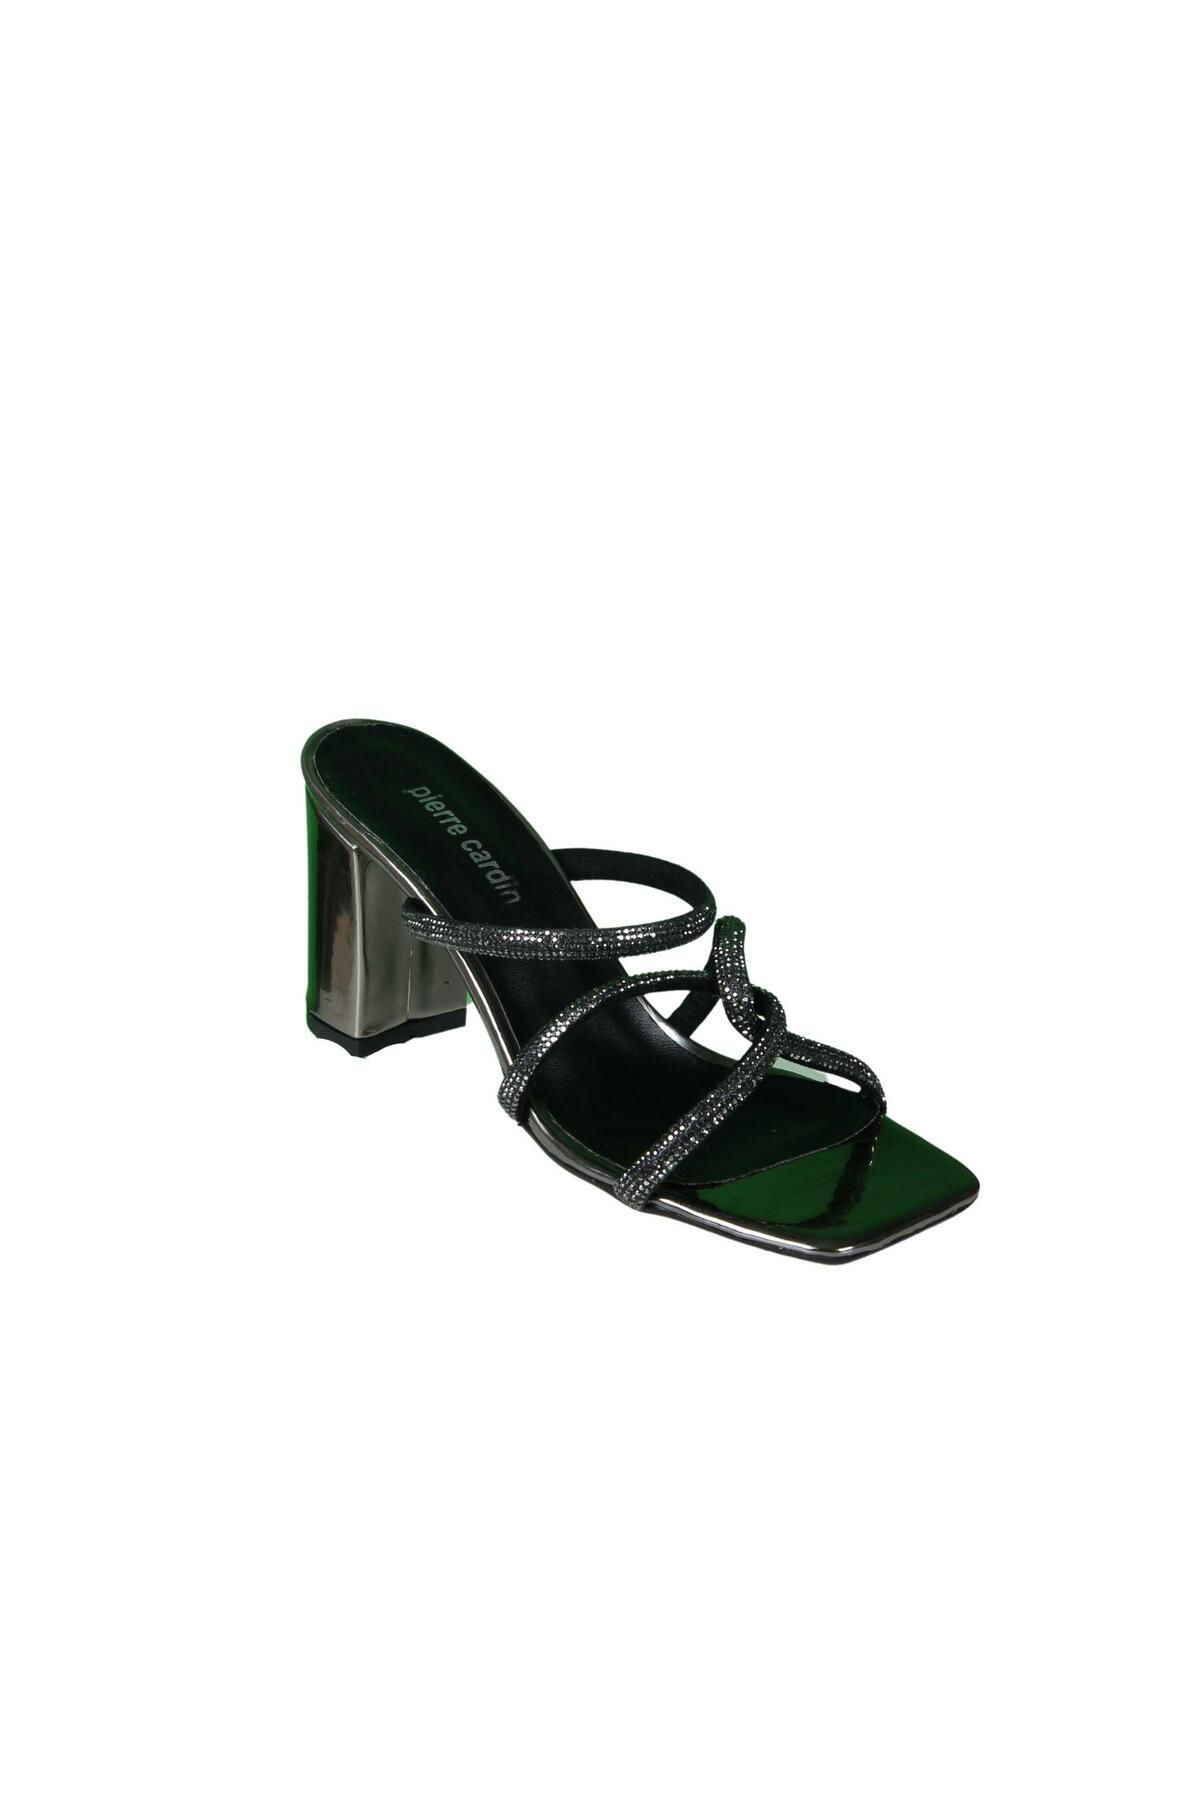 Pierre Cardin 52218 Kadın Topuklu Ayakkabı